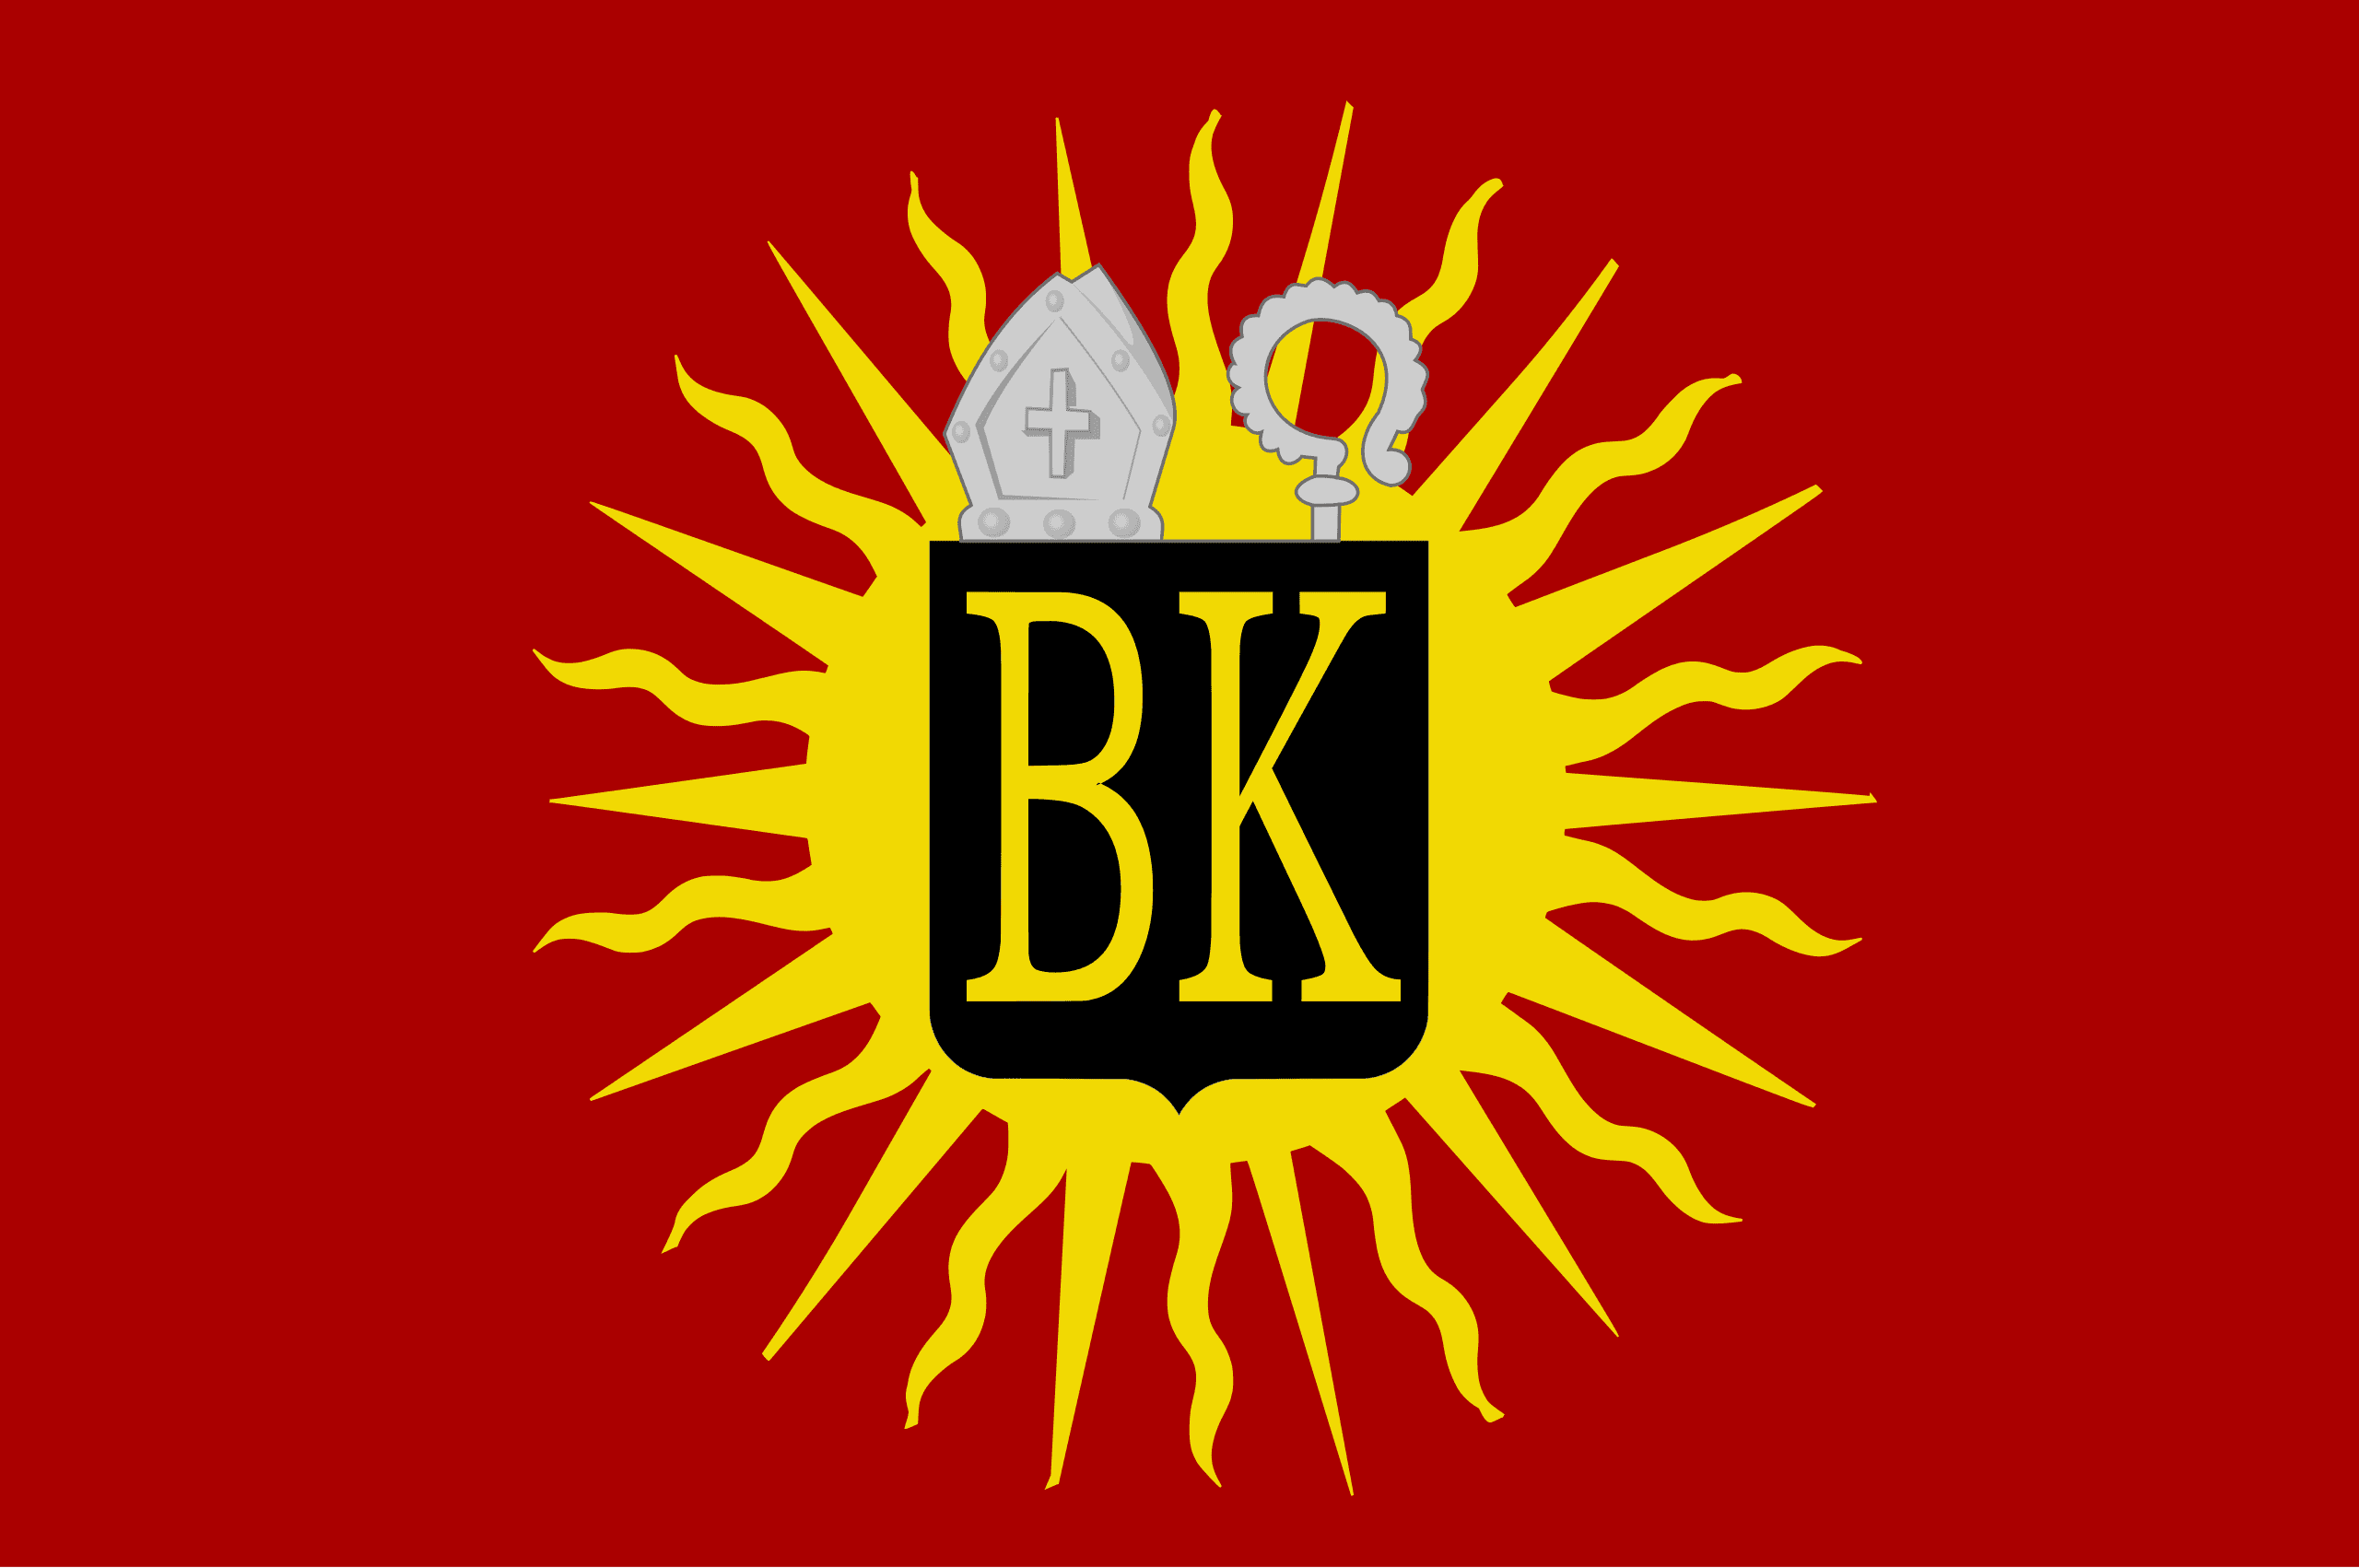 Zonnebeke flag